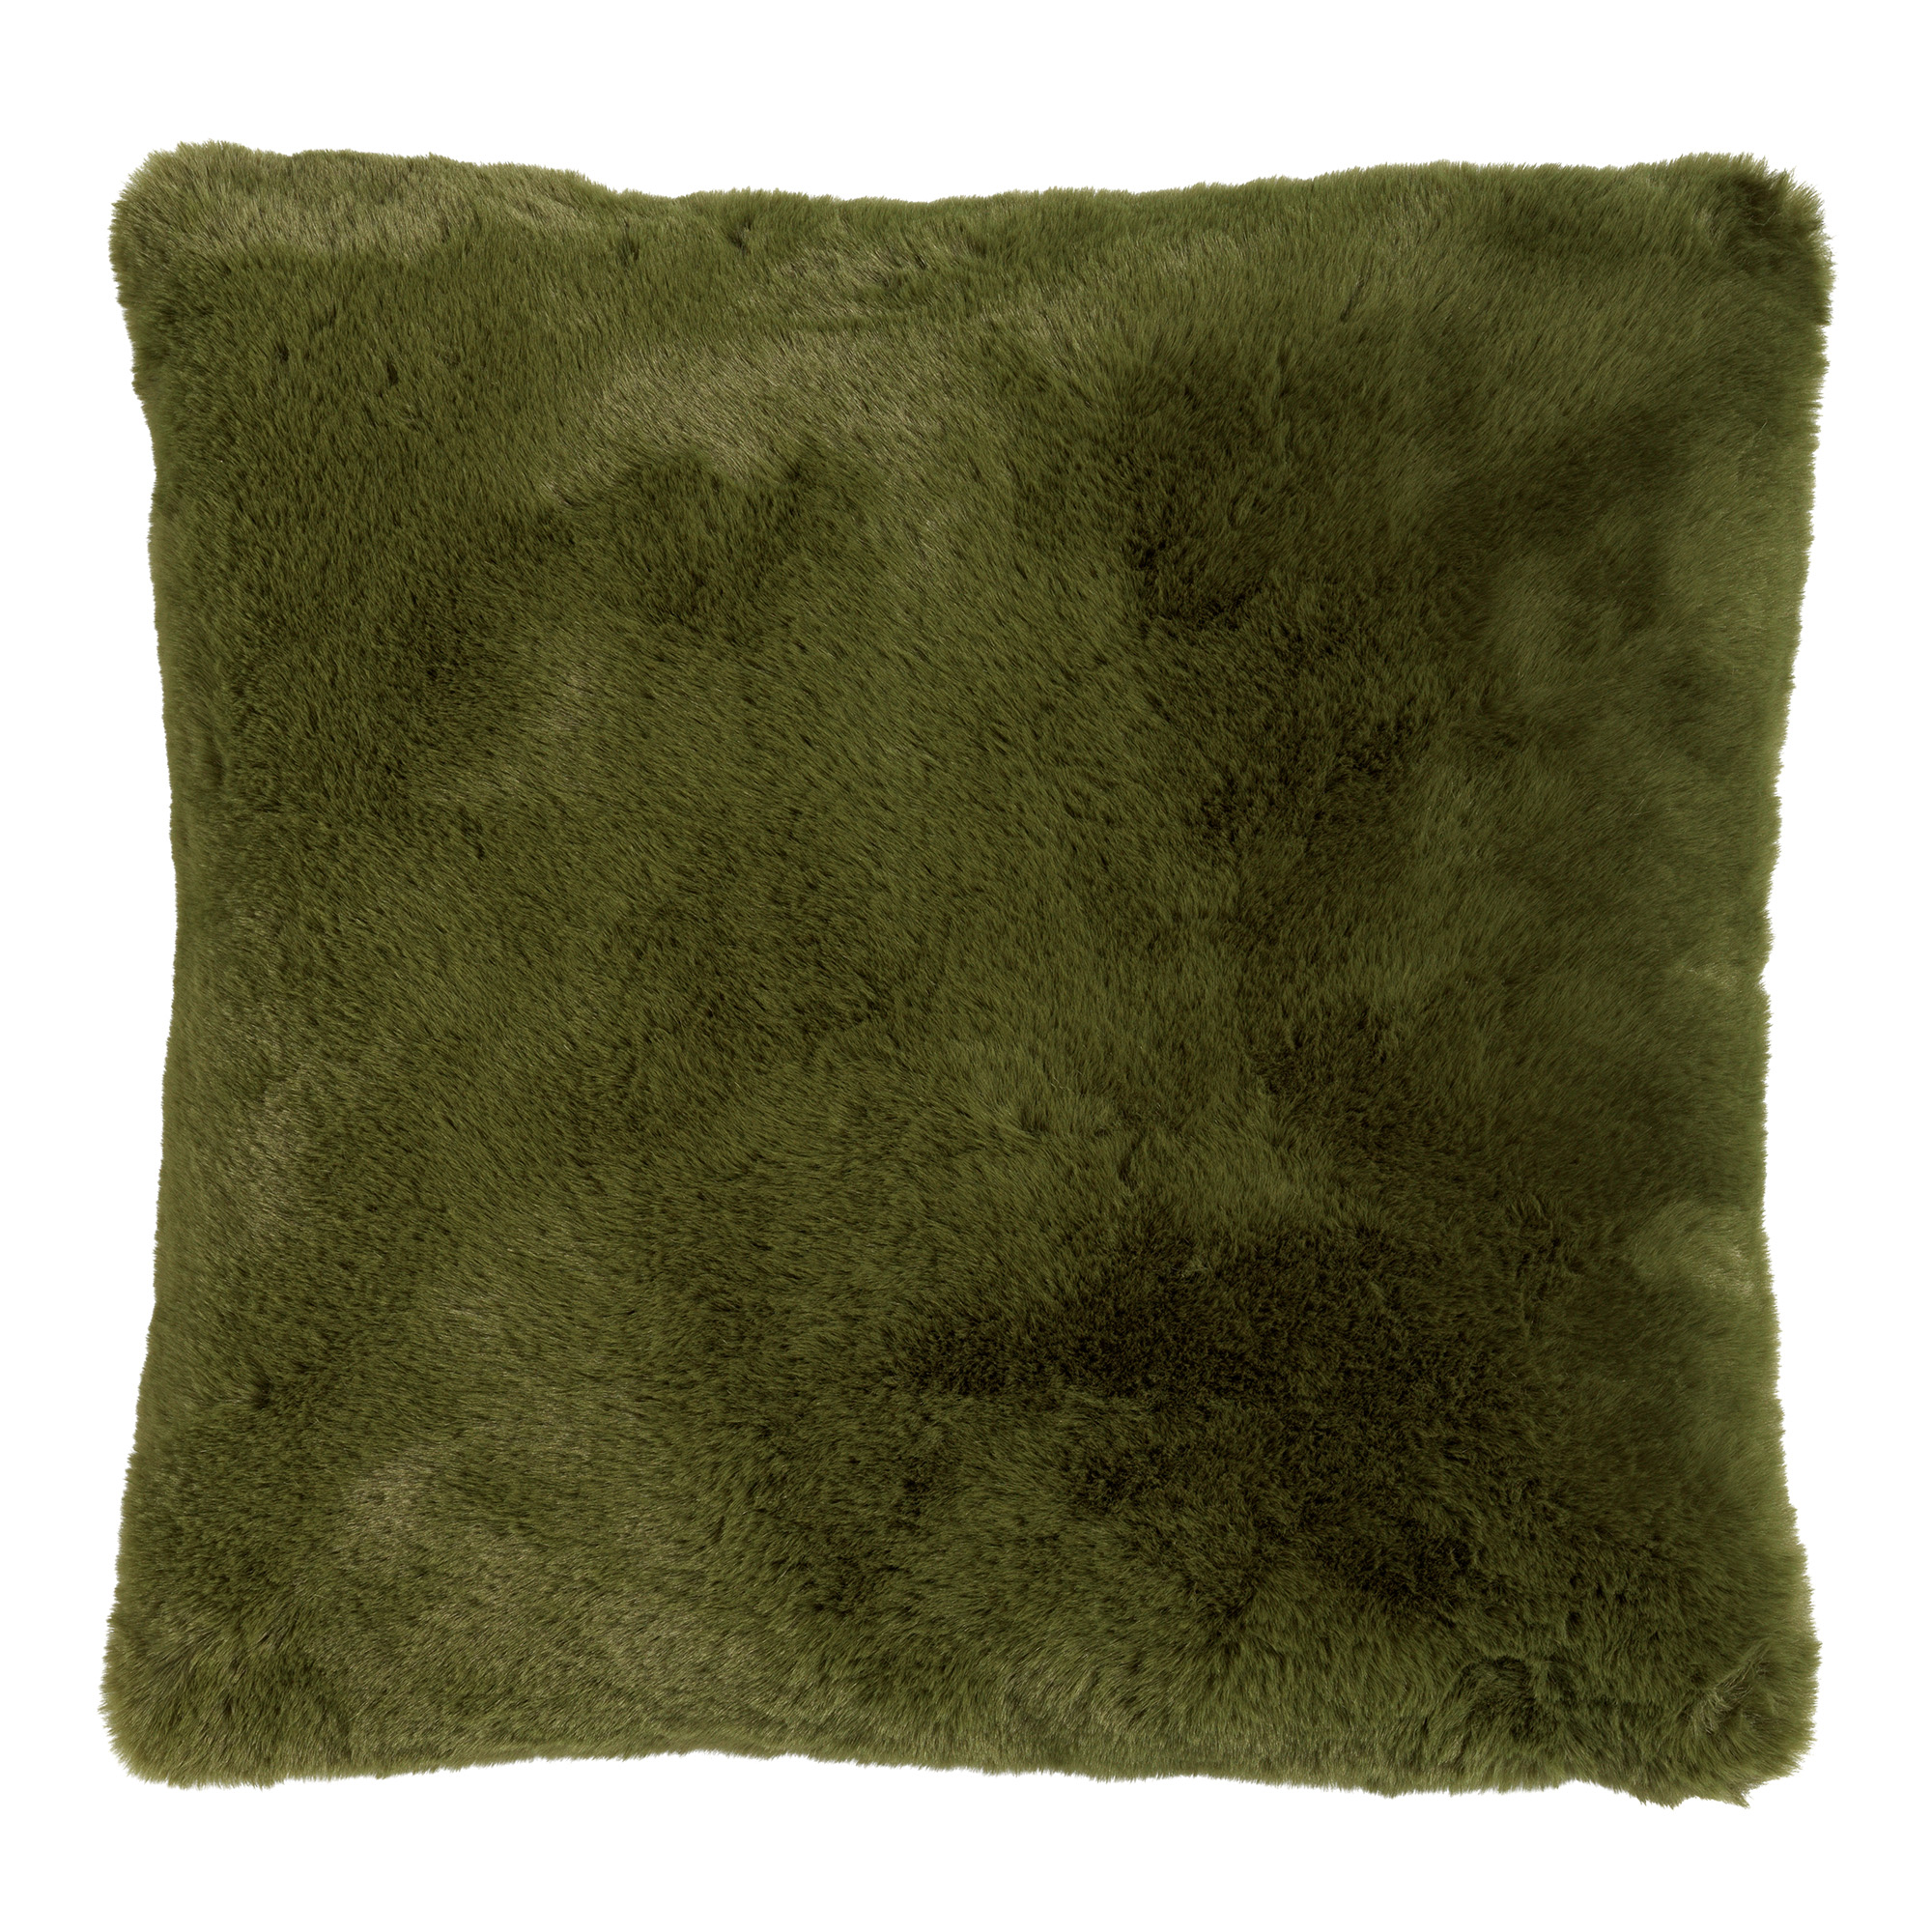 ZAYA - Kussenhoes unikleur 45x45 cm - Chive - groen - superzacht